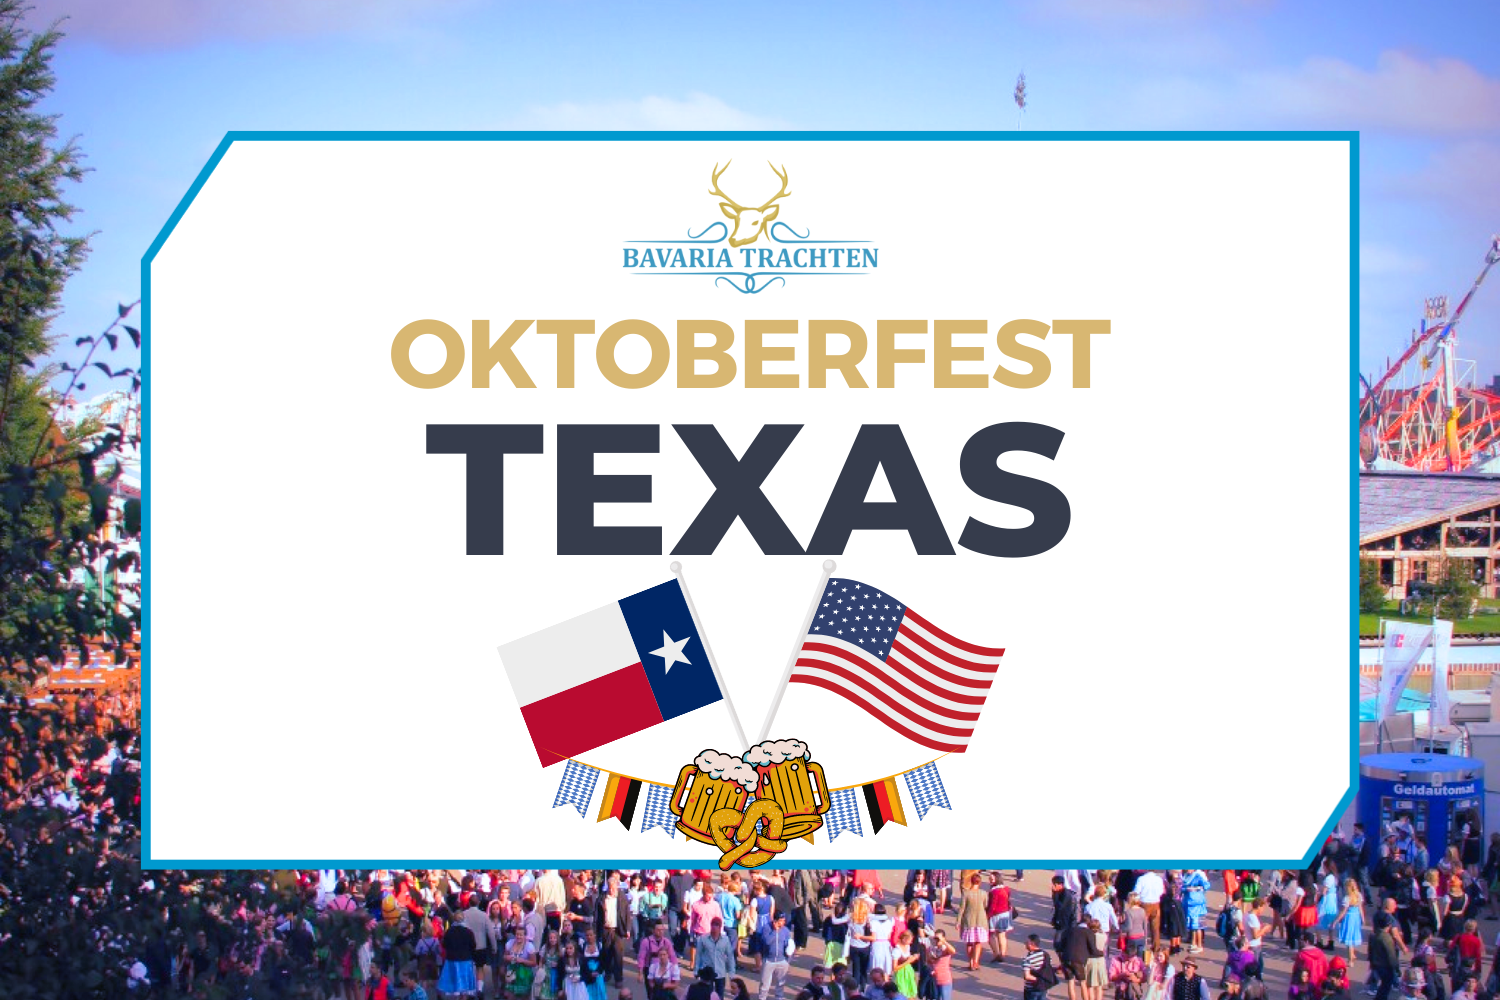 Oktoberfest Texas, USA